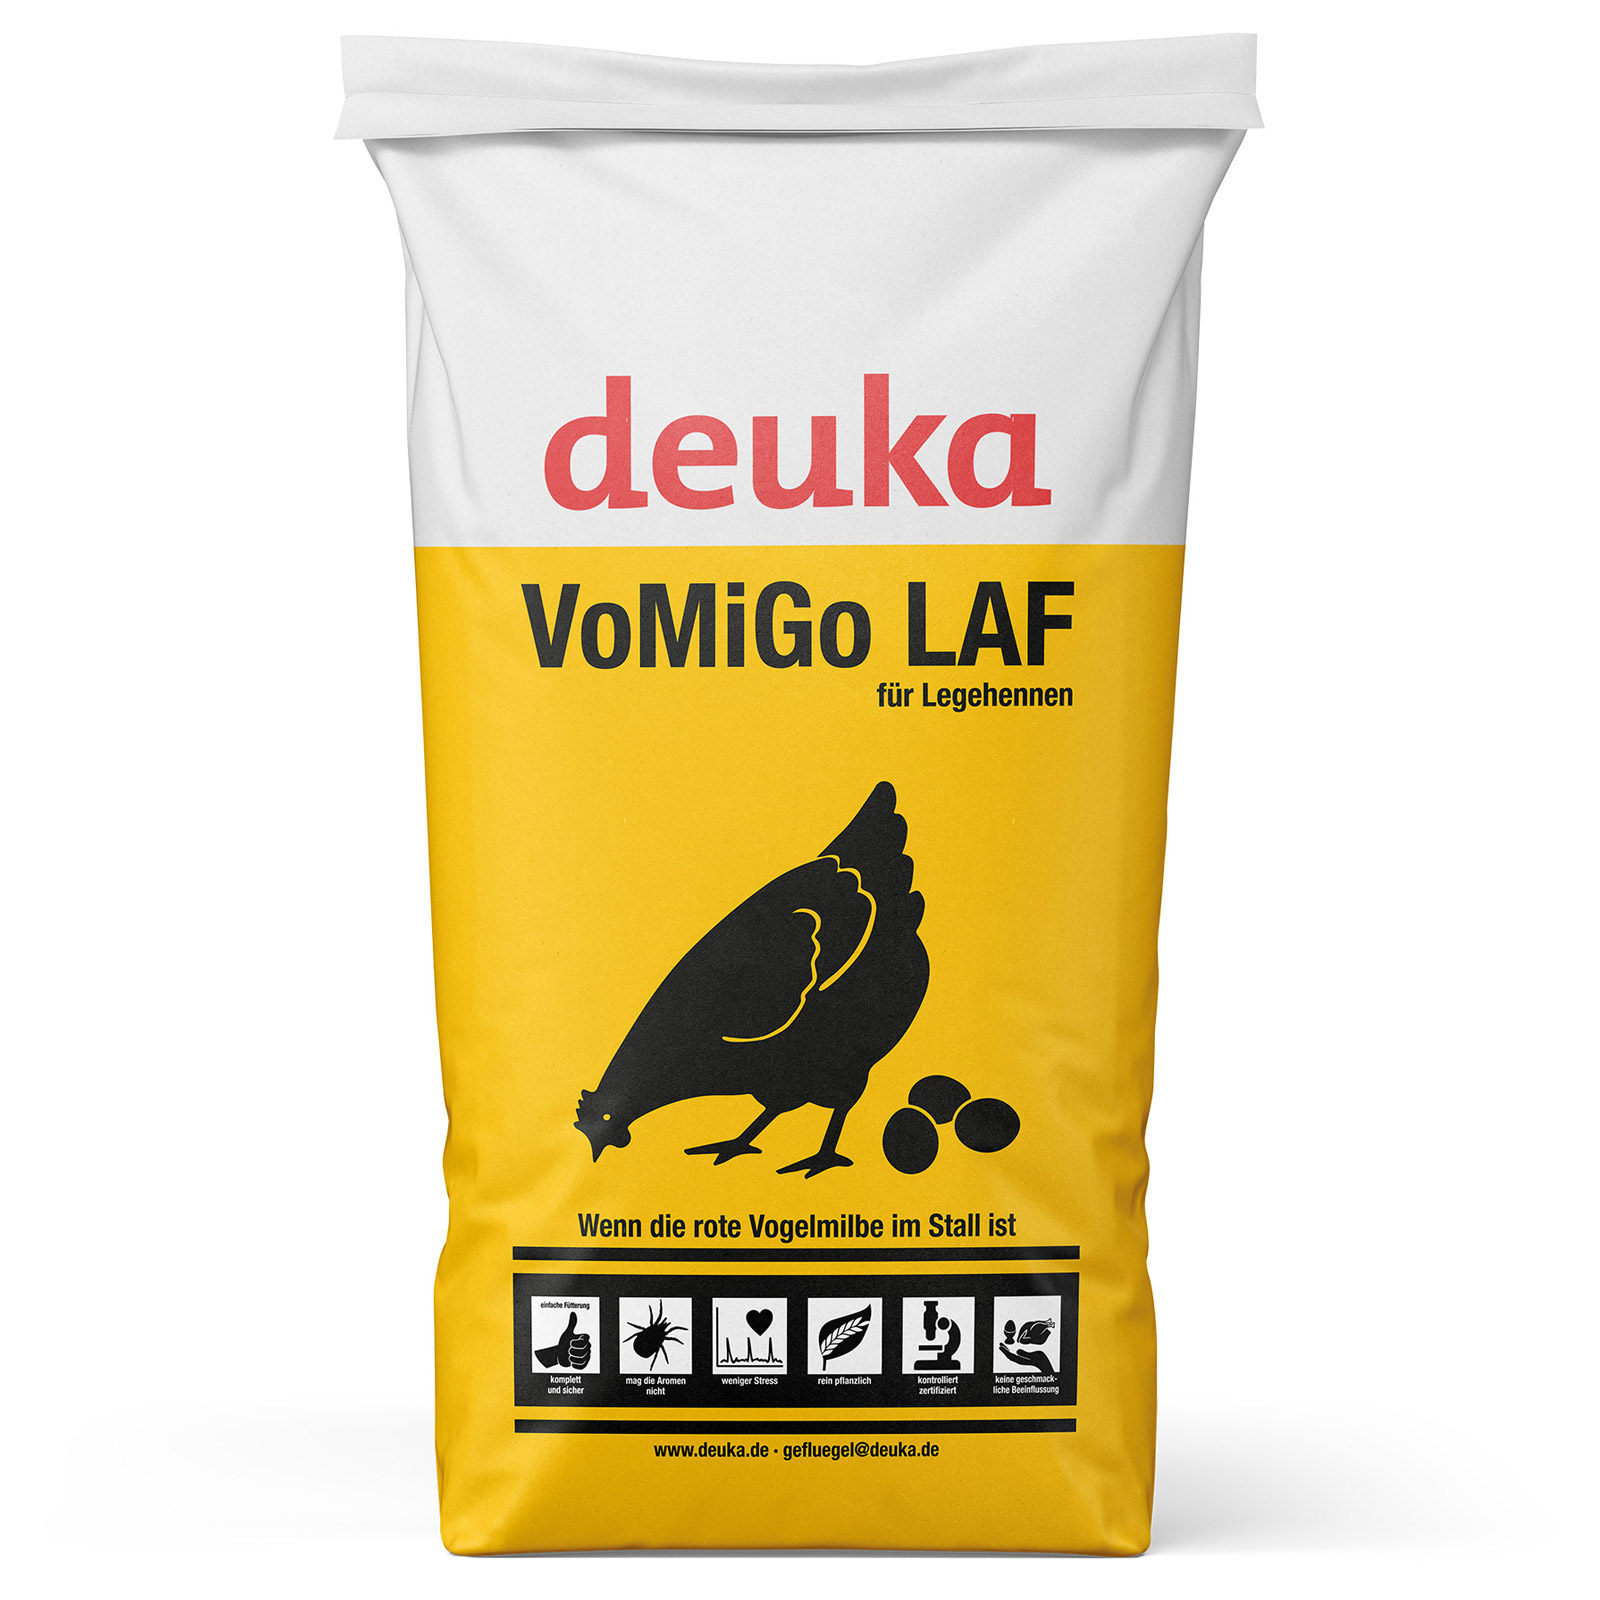 Deuka All-Mash VoMiGo LAF Pellet Chicken Feed for bird mite 25 kg